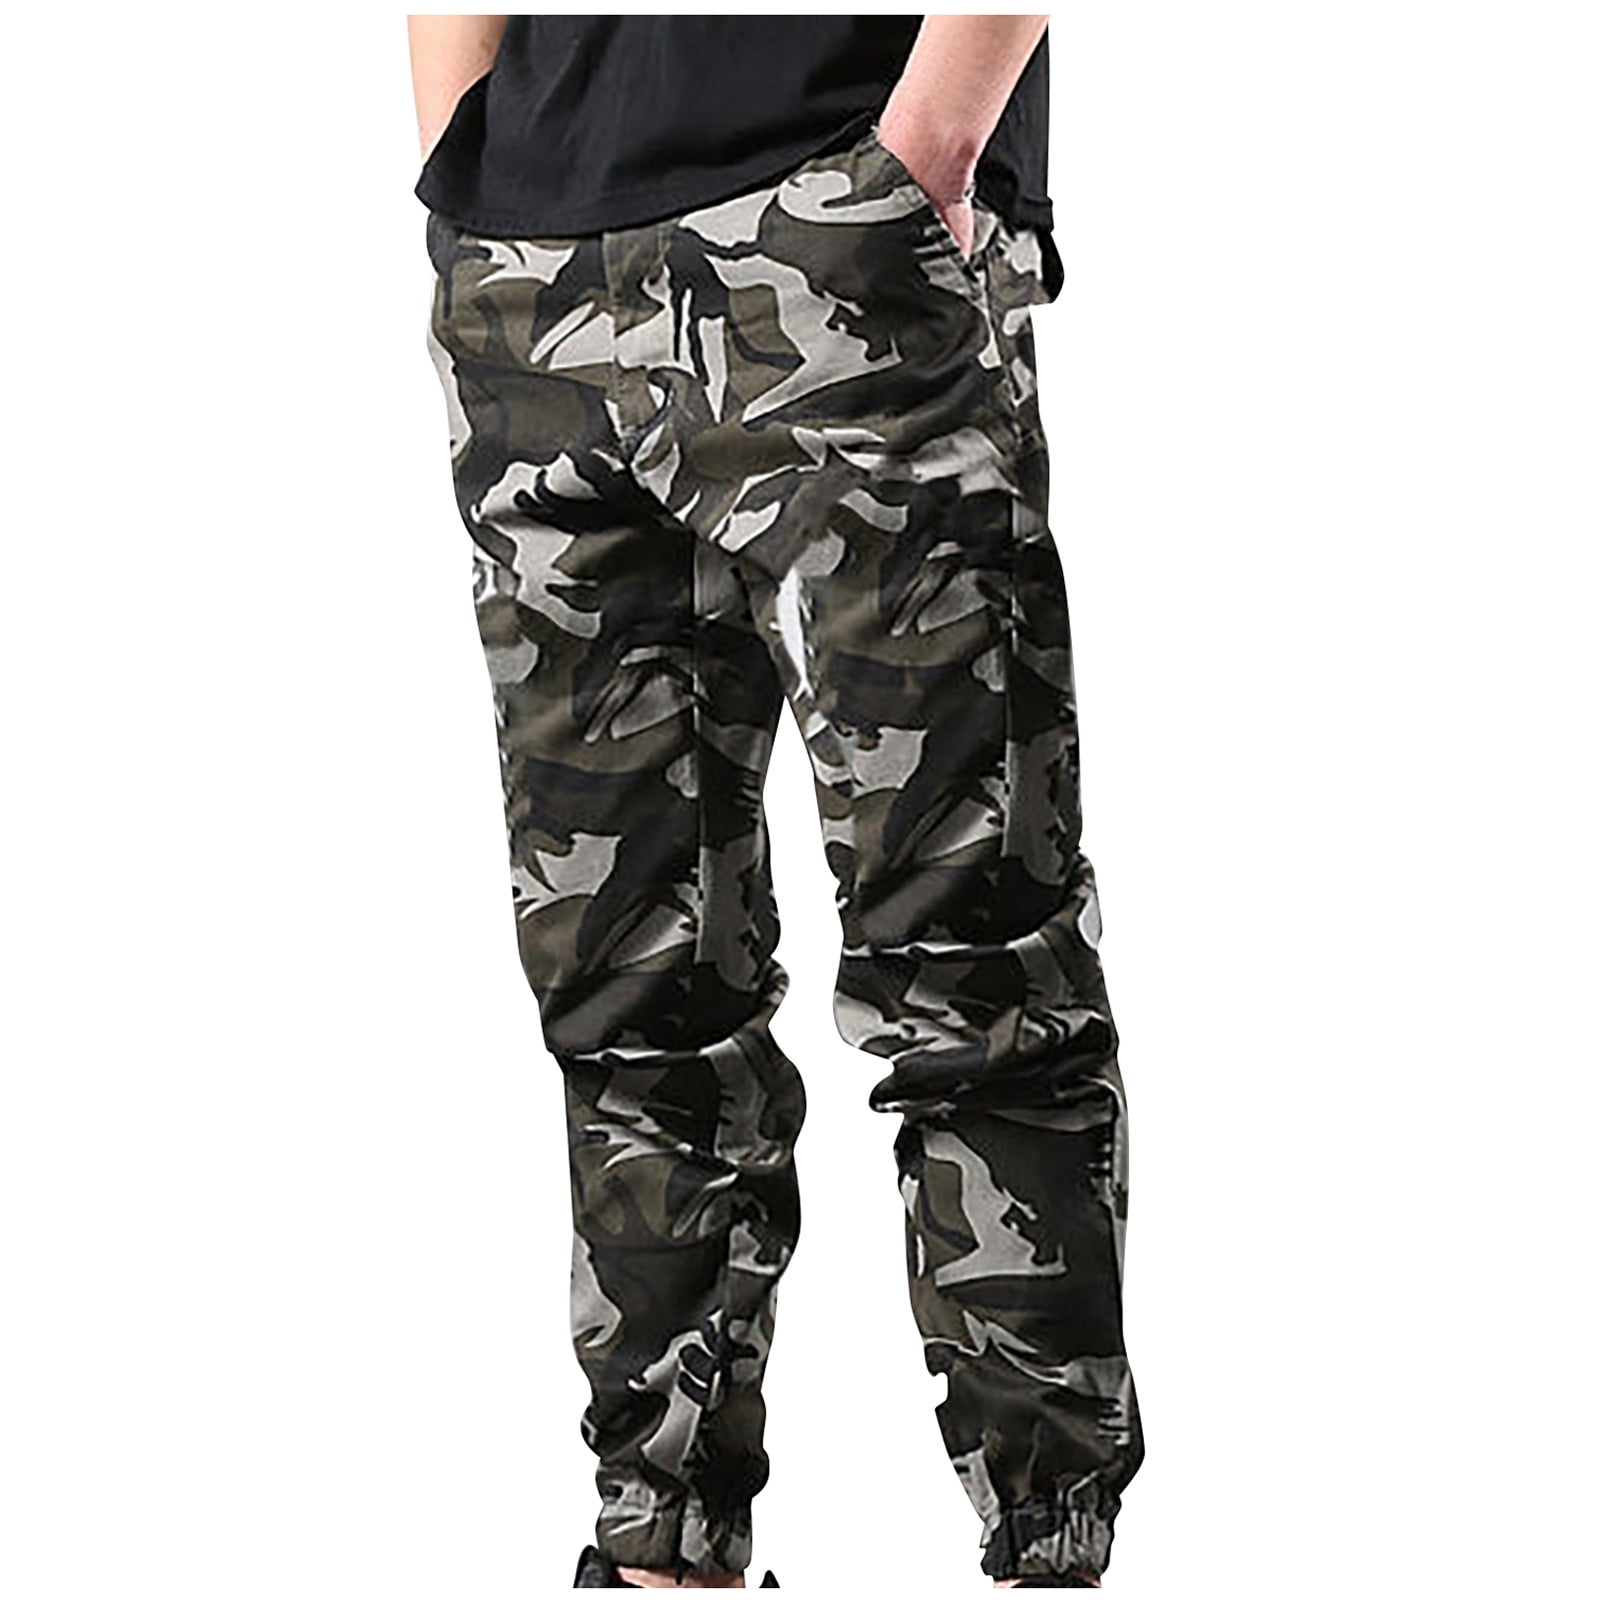 Military Techwear Pants For $27.0! - Kawaii Stop